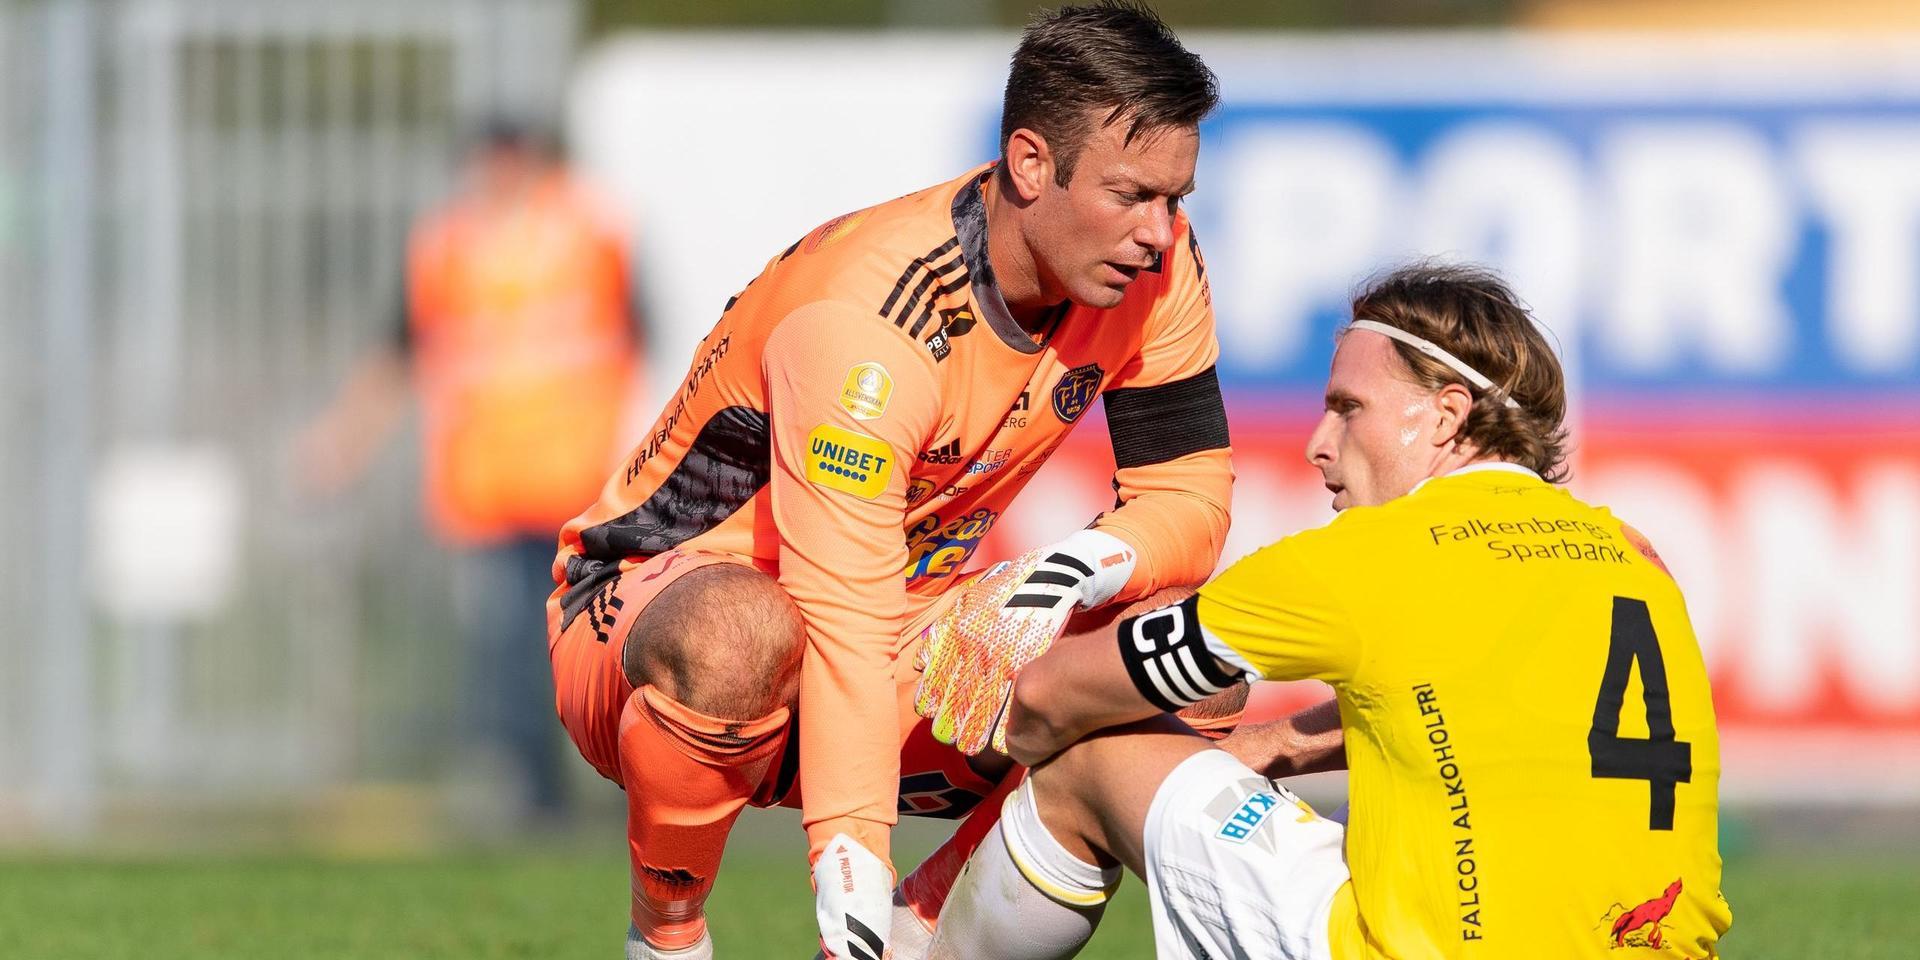 Calle Johansson klev av skadad mot Hammarby, men ser ut att kunna spela lördagens match. 